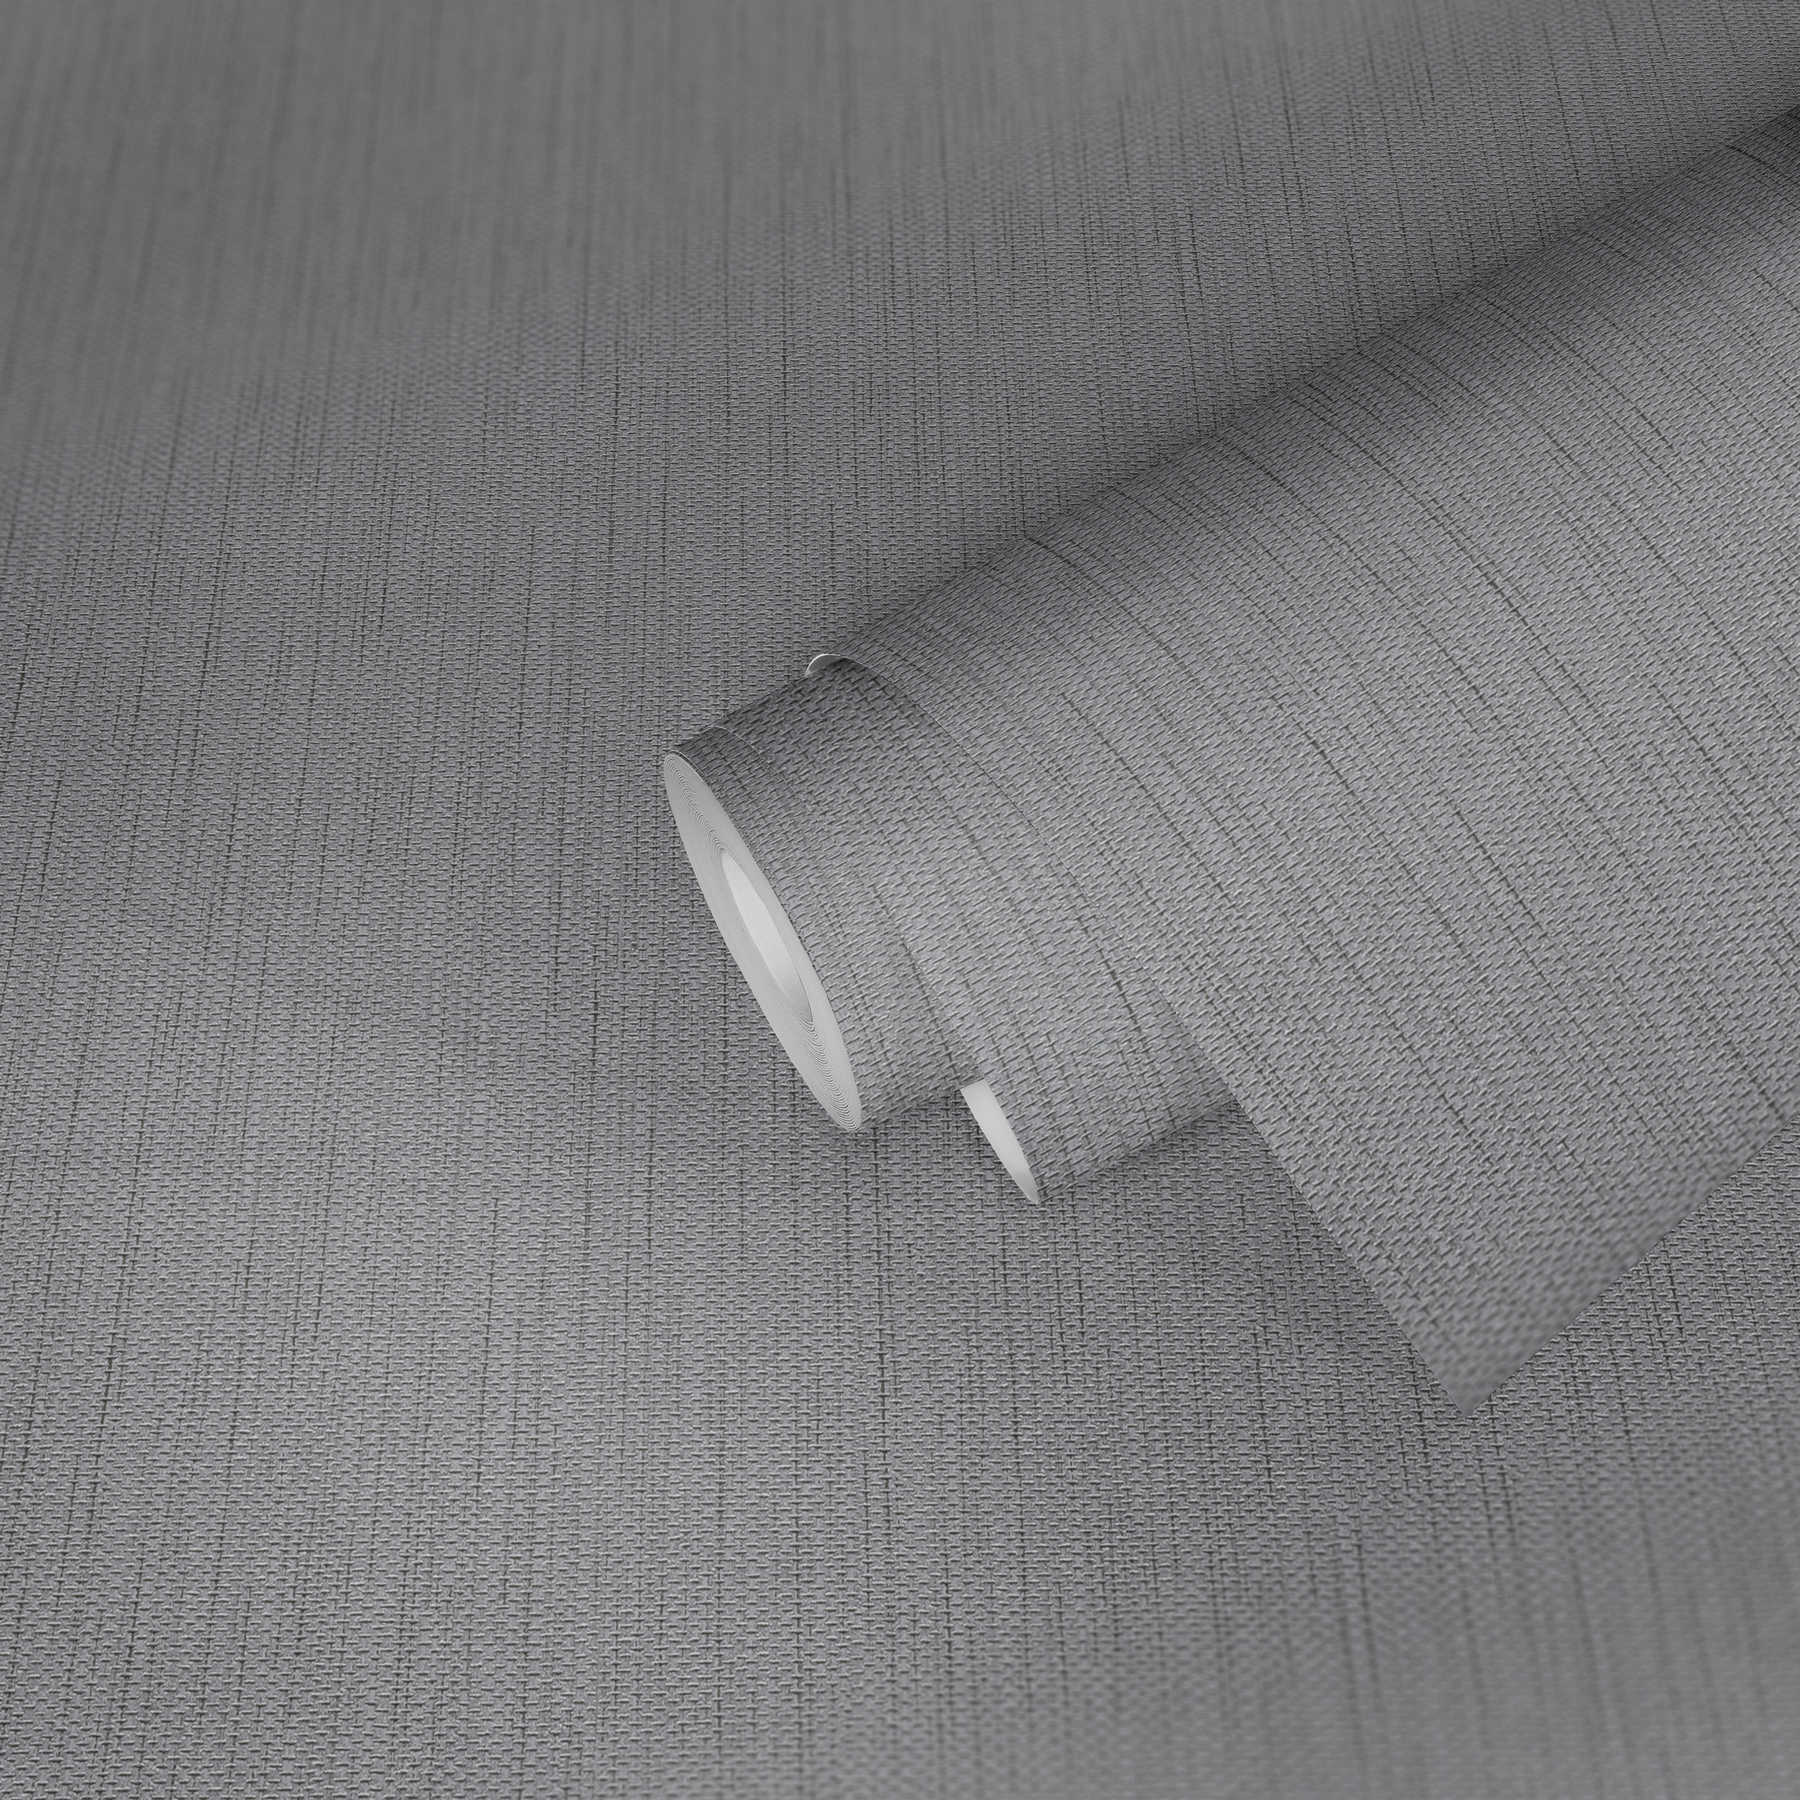             Papel pintado no tejido de aspecto textil con estructura de lino - gris
        